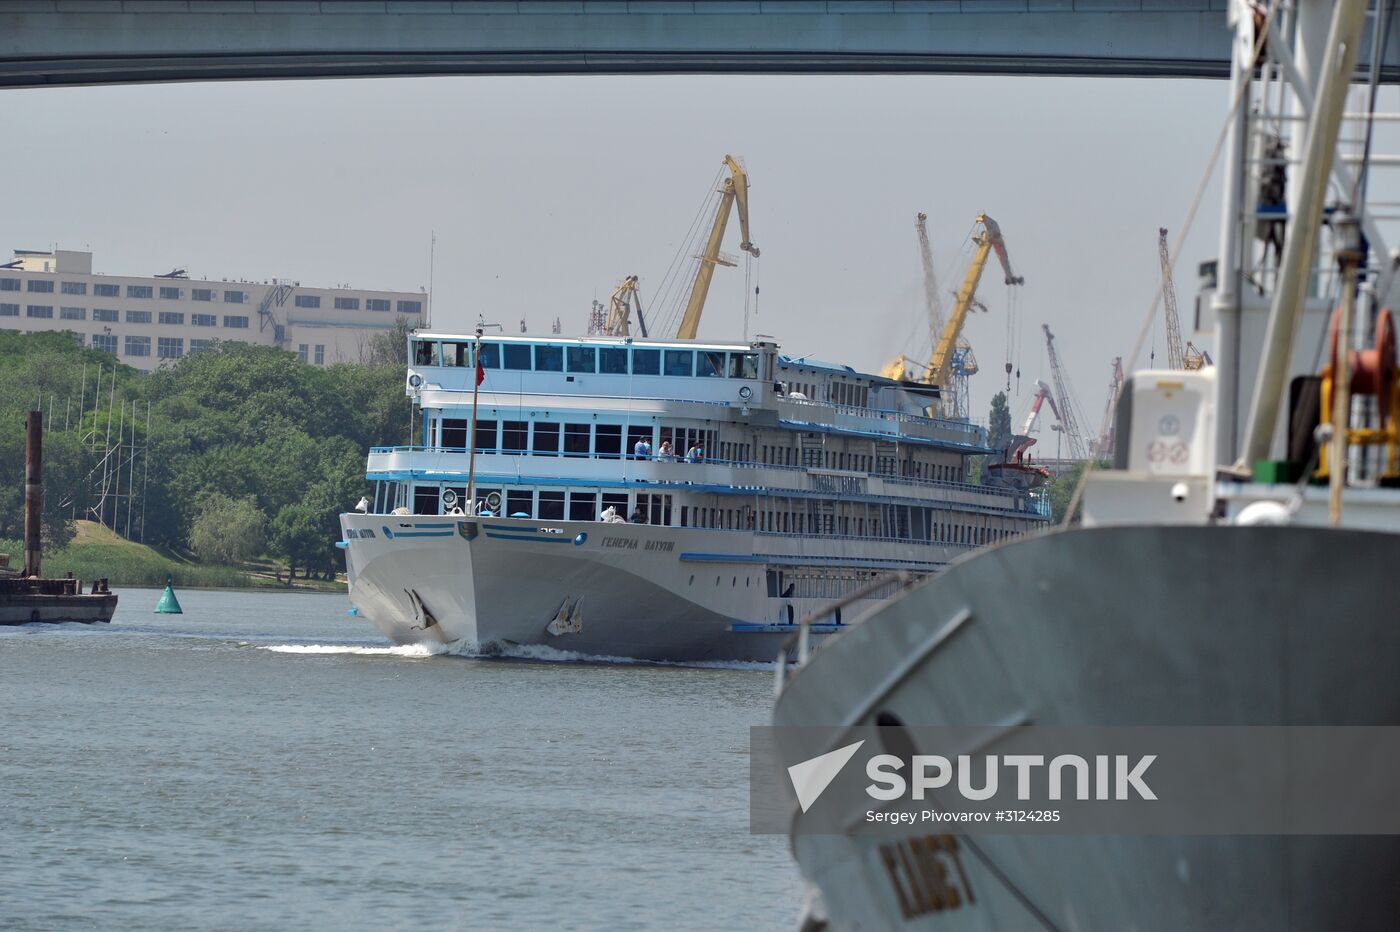 Passenger liner General Vatutin arrives in Rostov-on-Don